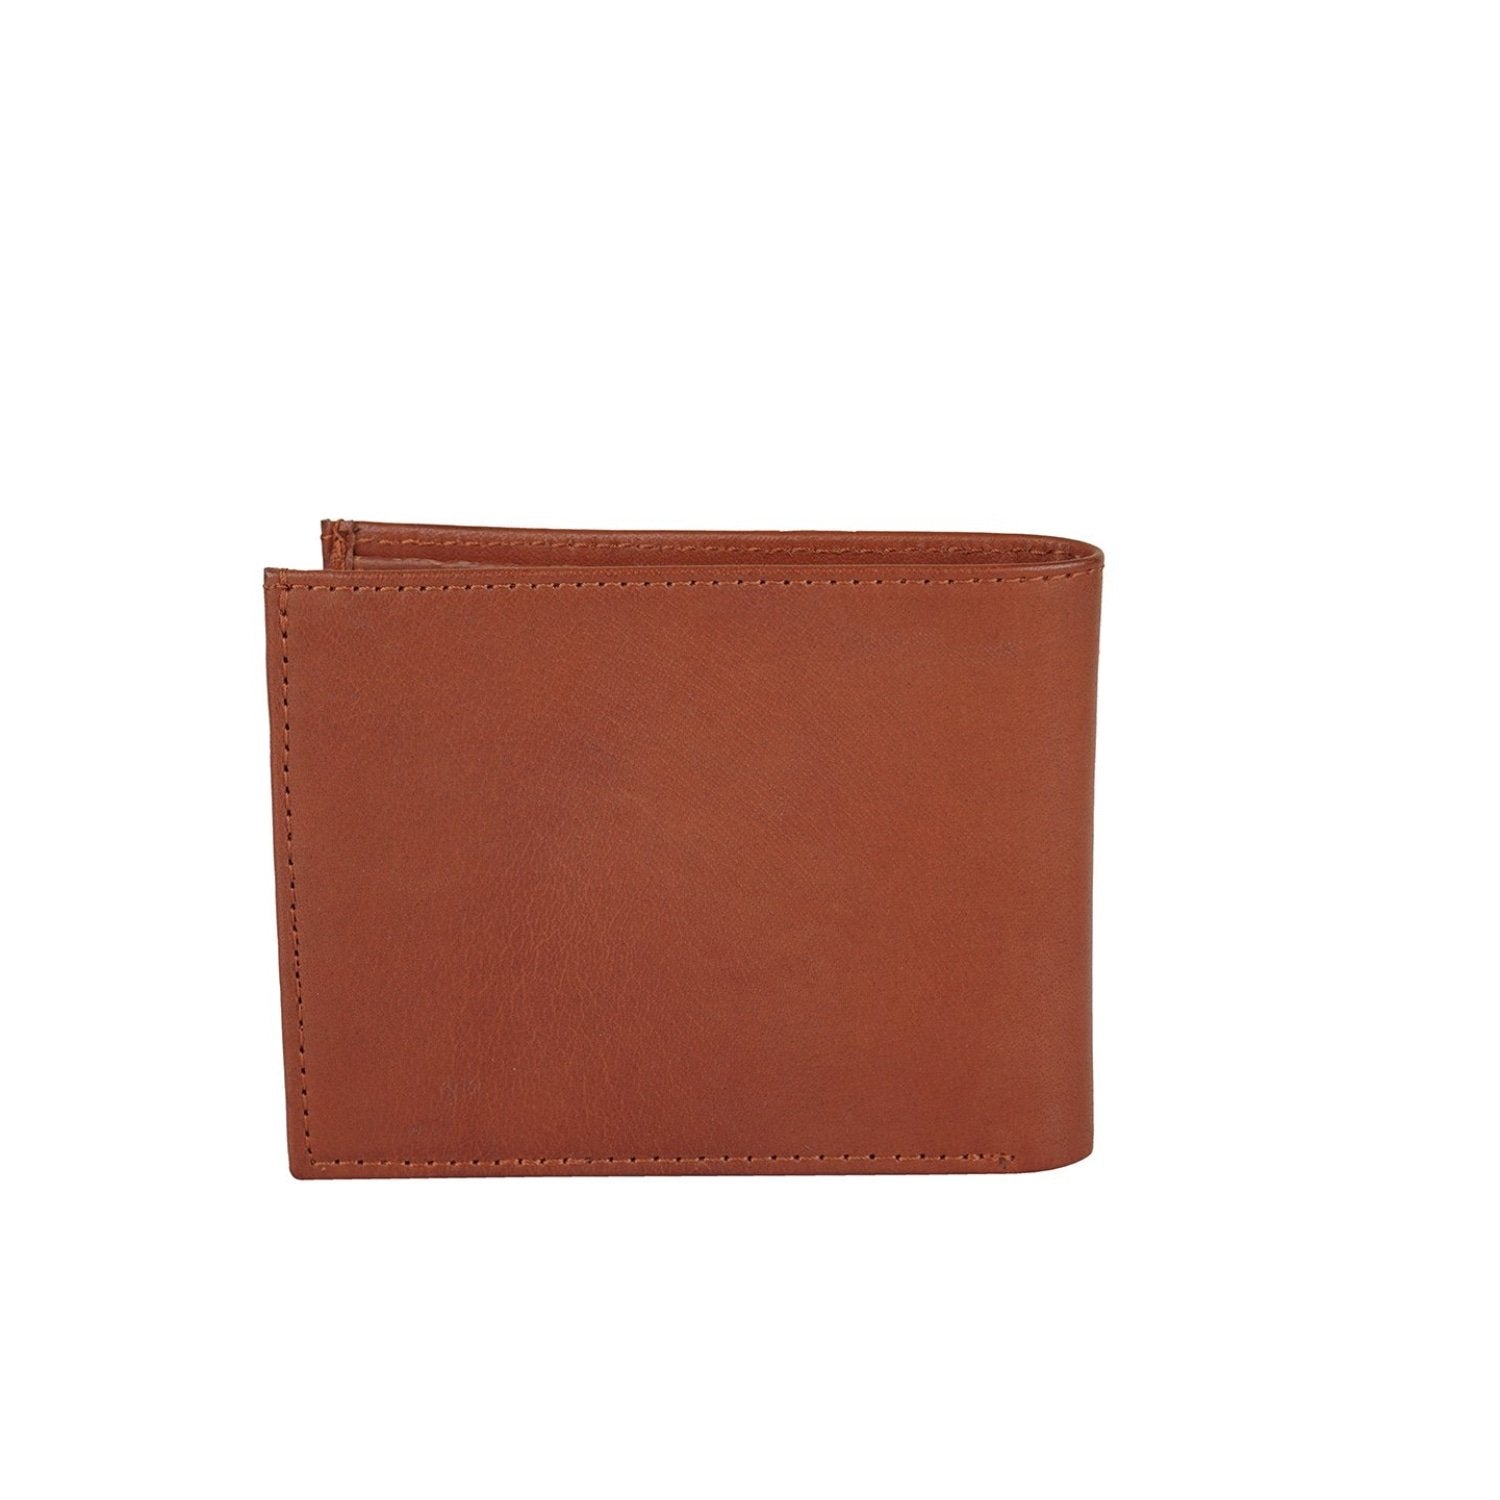 Pochette Men’s Tan Wallet - wallets